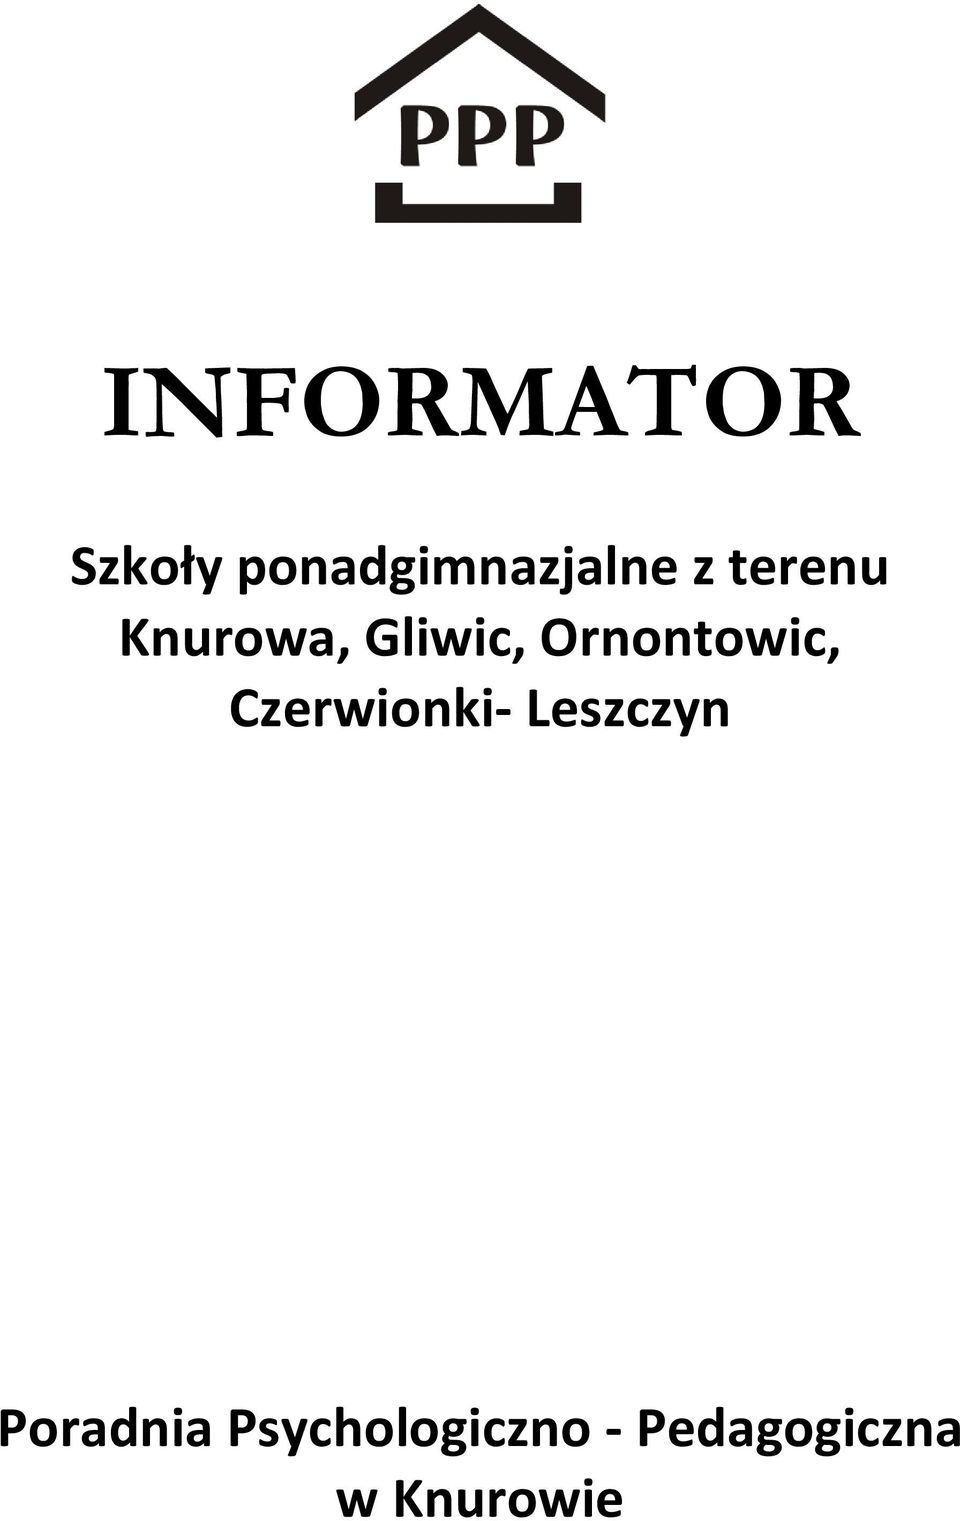 Ornontowic, Czerwionki- Leszczyn